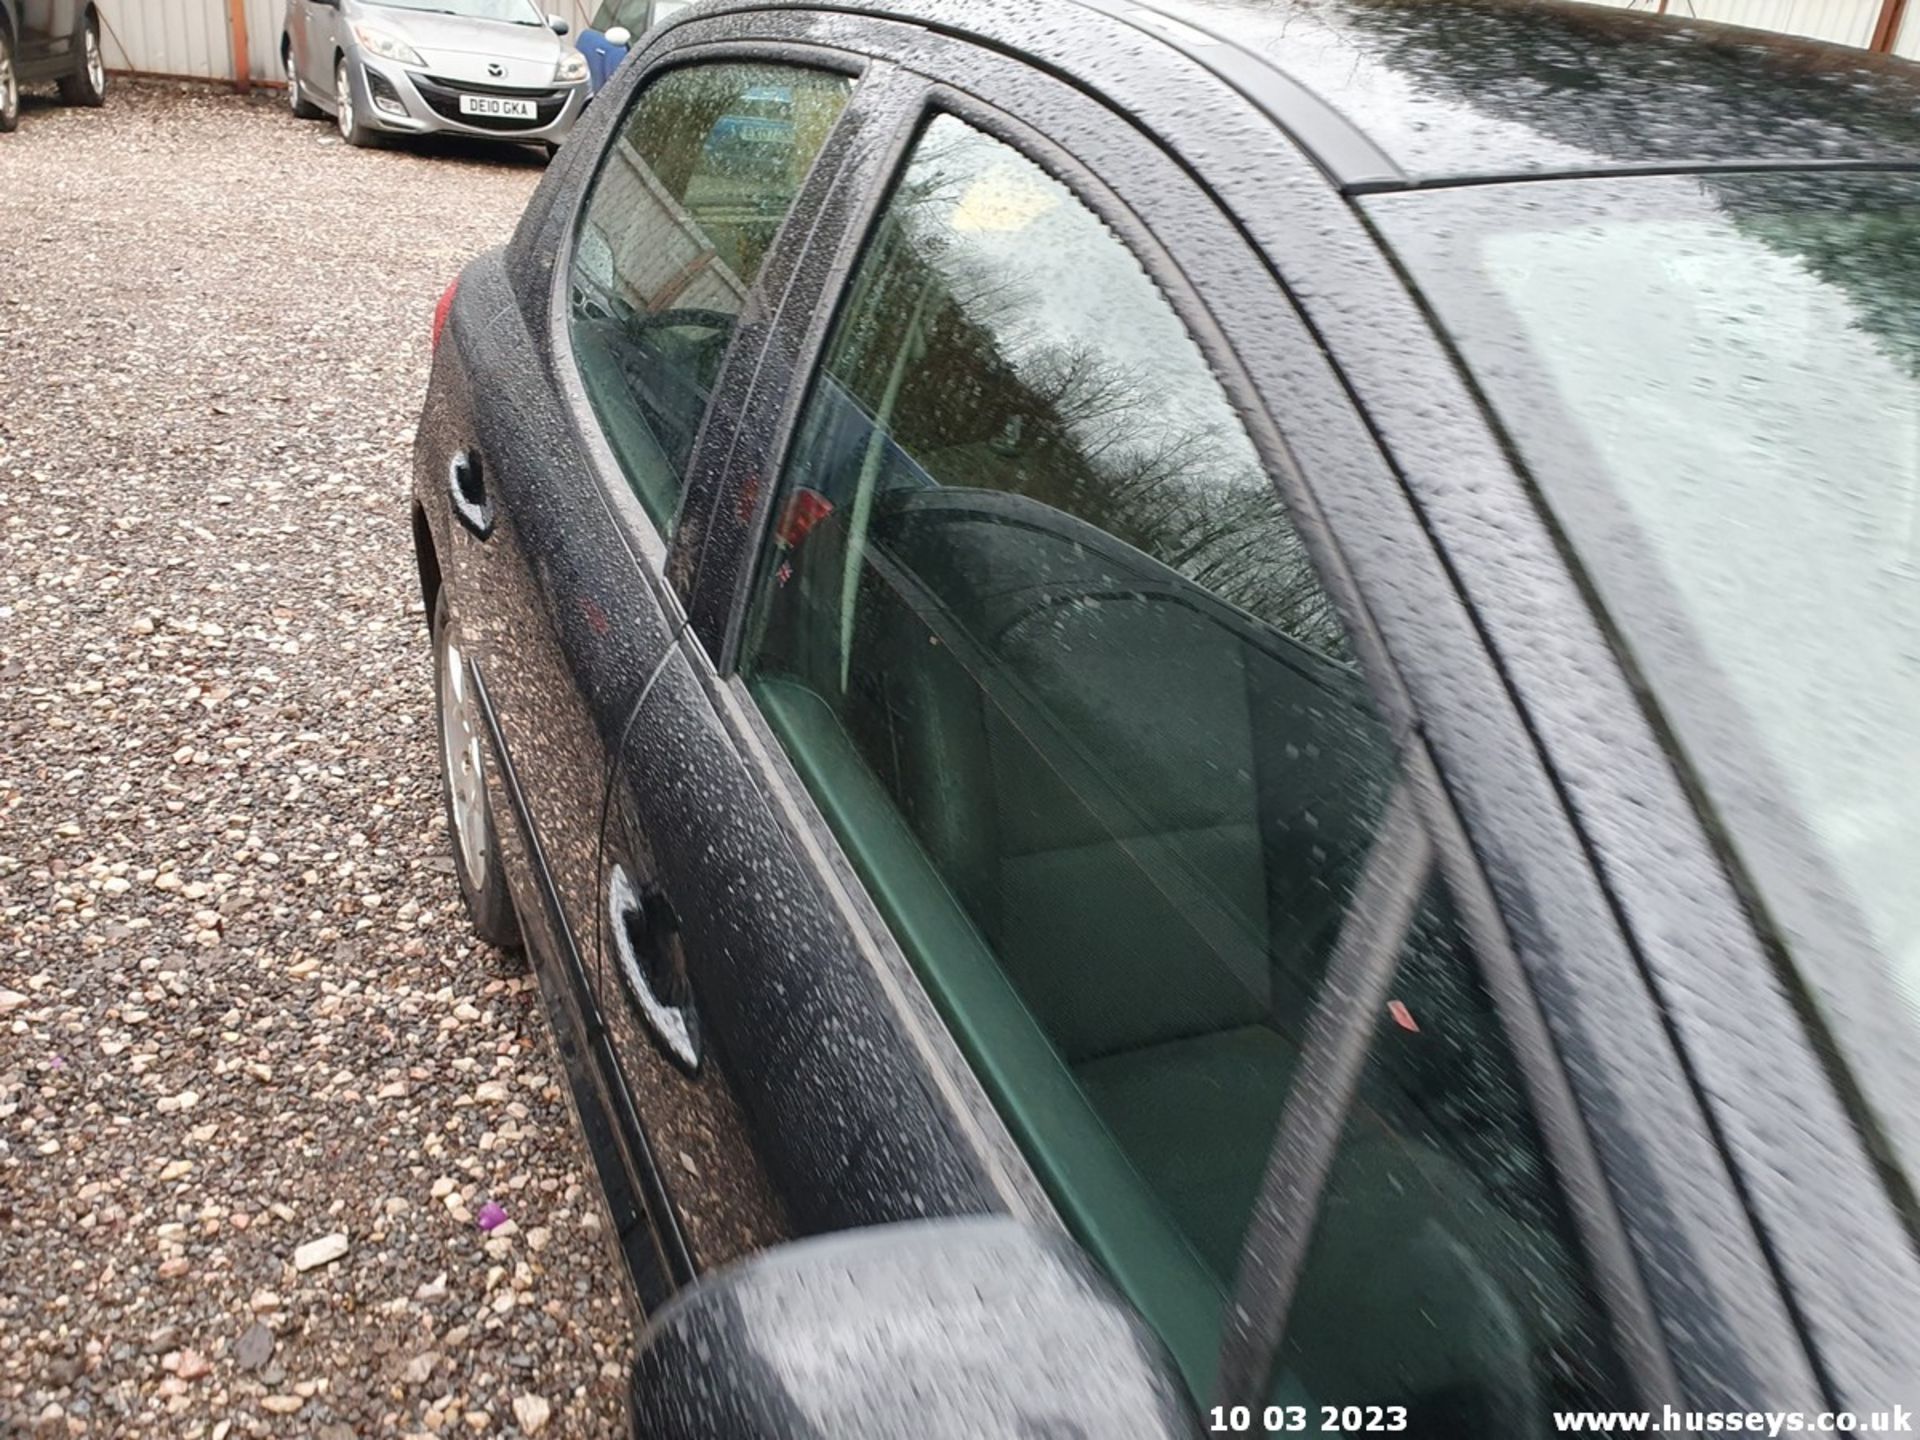 03/53 BMW X5 D AUTO - 2926cc 5dr Estate (Grey, 205k) - Image 38 of 66